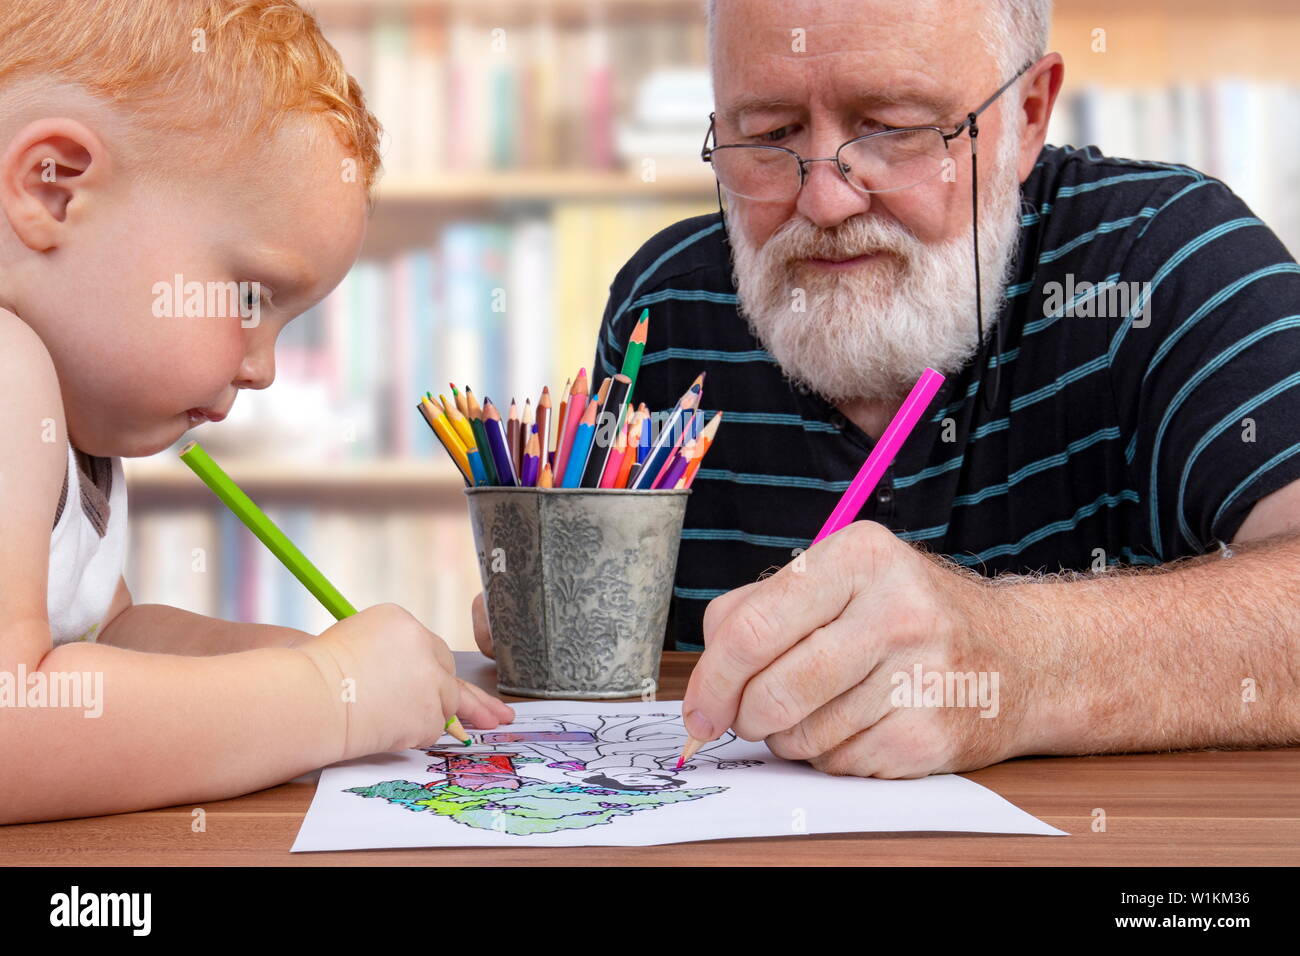 Grand-père travaillant ensemble et la coloration d'un dessin avec son petit-fils Banque D'Images